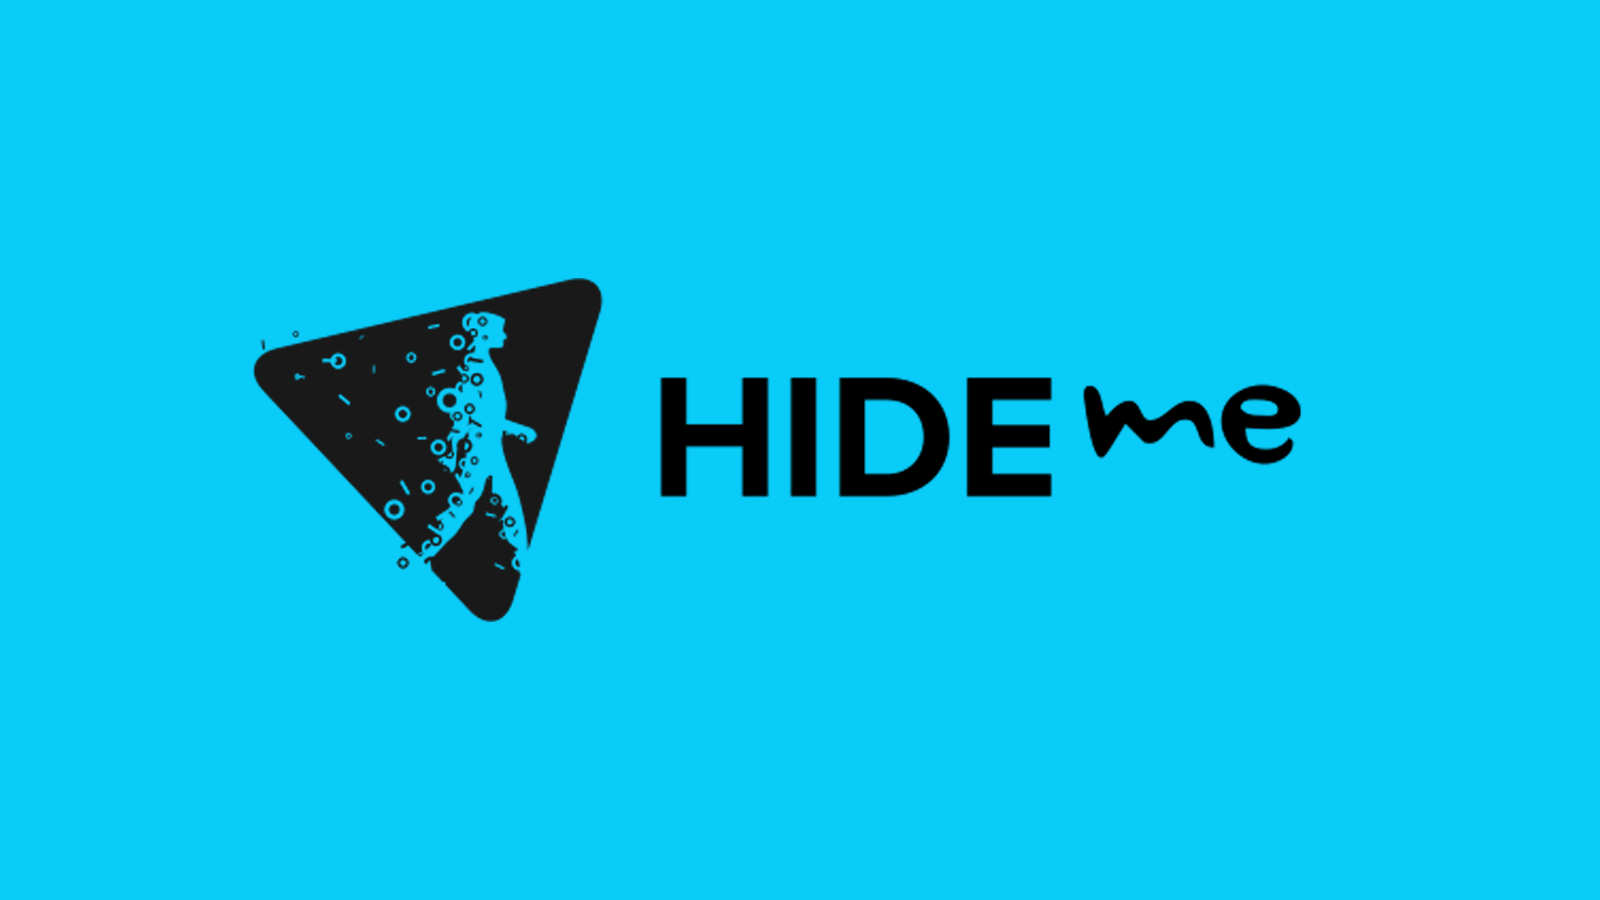 Tên và logo công ty Hide.me trên nền xanh lam